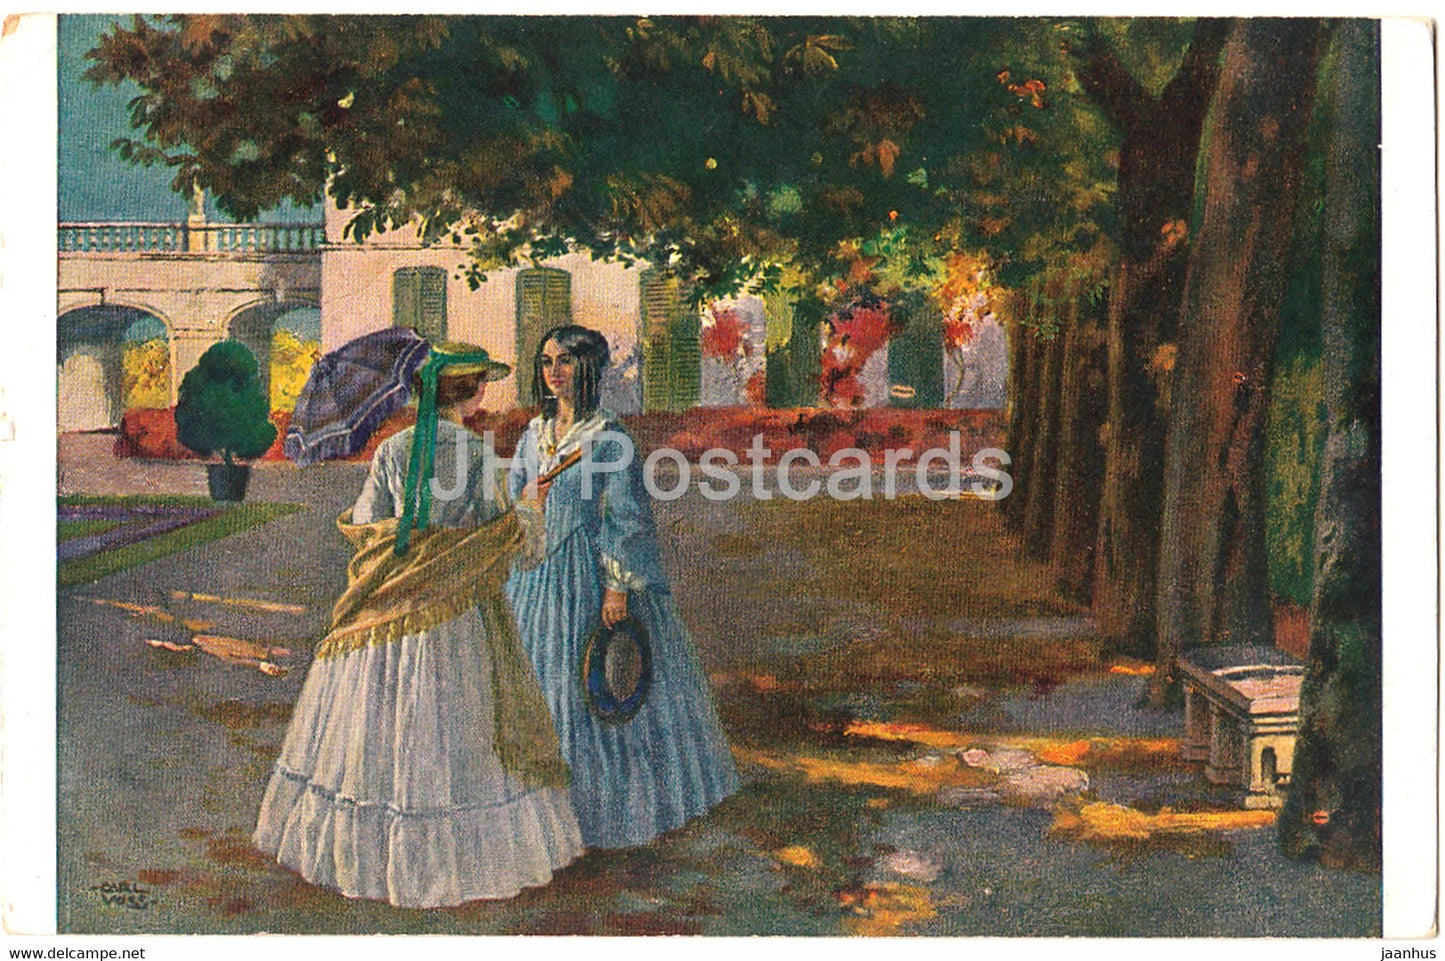 painting by Carl Leop Voss - Im Park - Deutsche Kunstler - 1054 - German art - old postcard - Germany - unused - JH Postcards